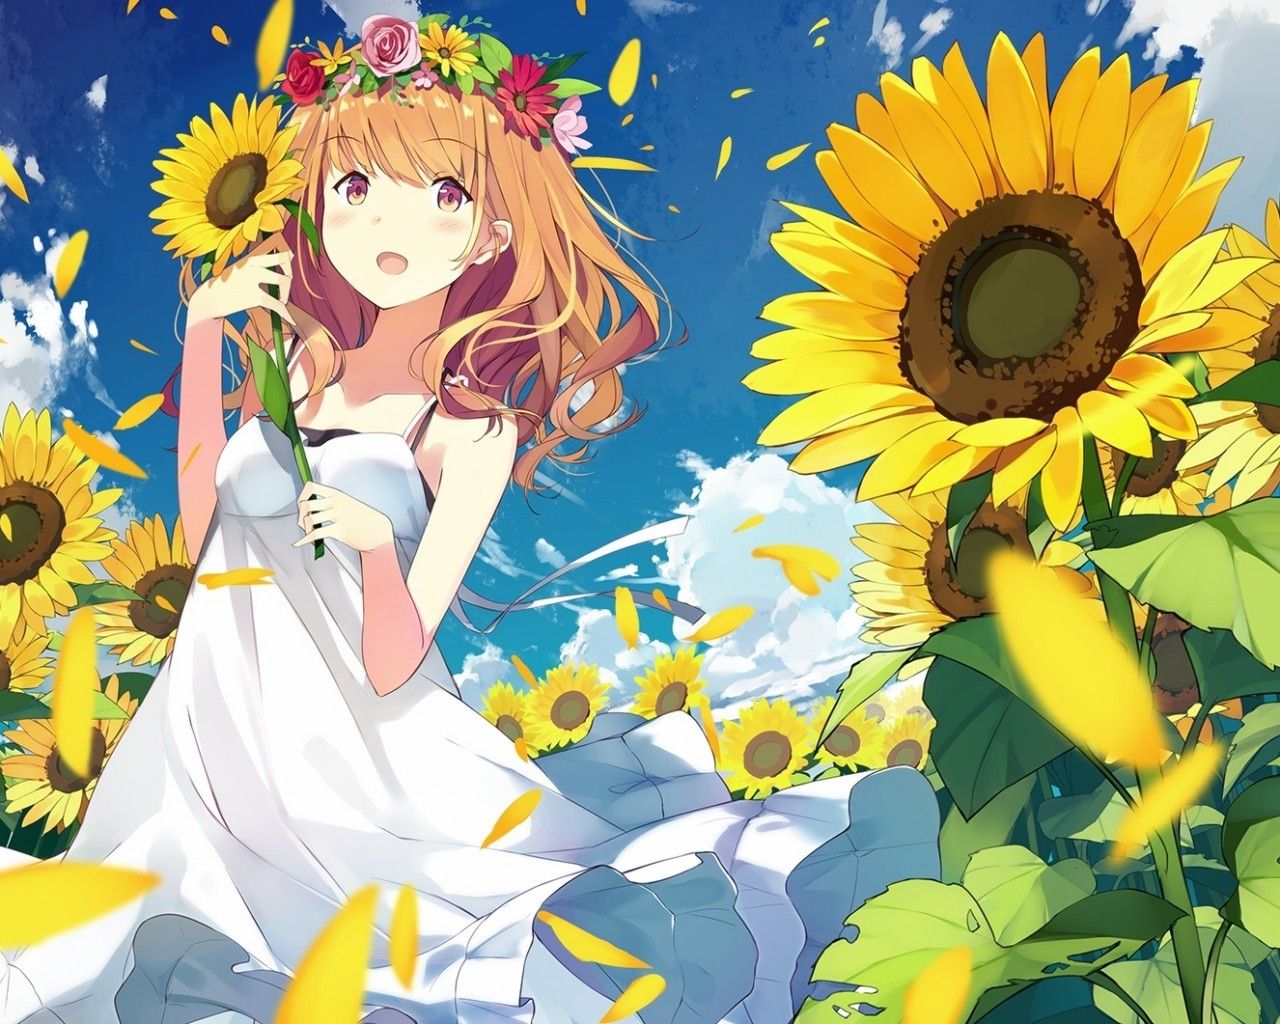 Download 1280x1024 Anime Girl, Summer Dress, Sunflowers, White Dress, Wind, Petals Wallpaper